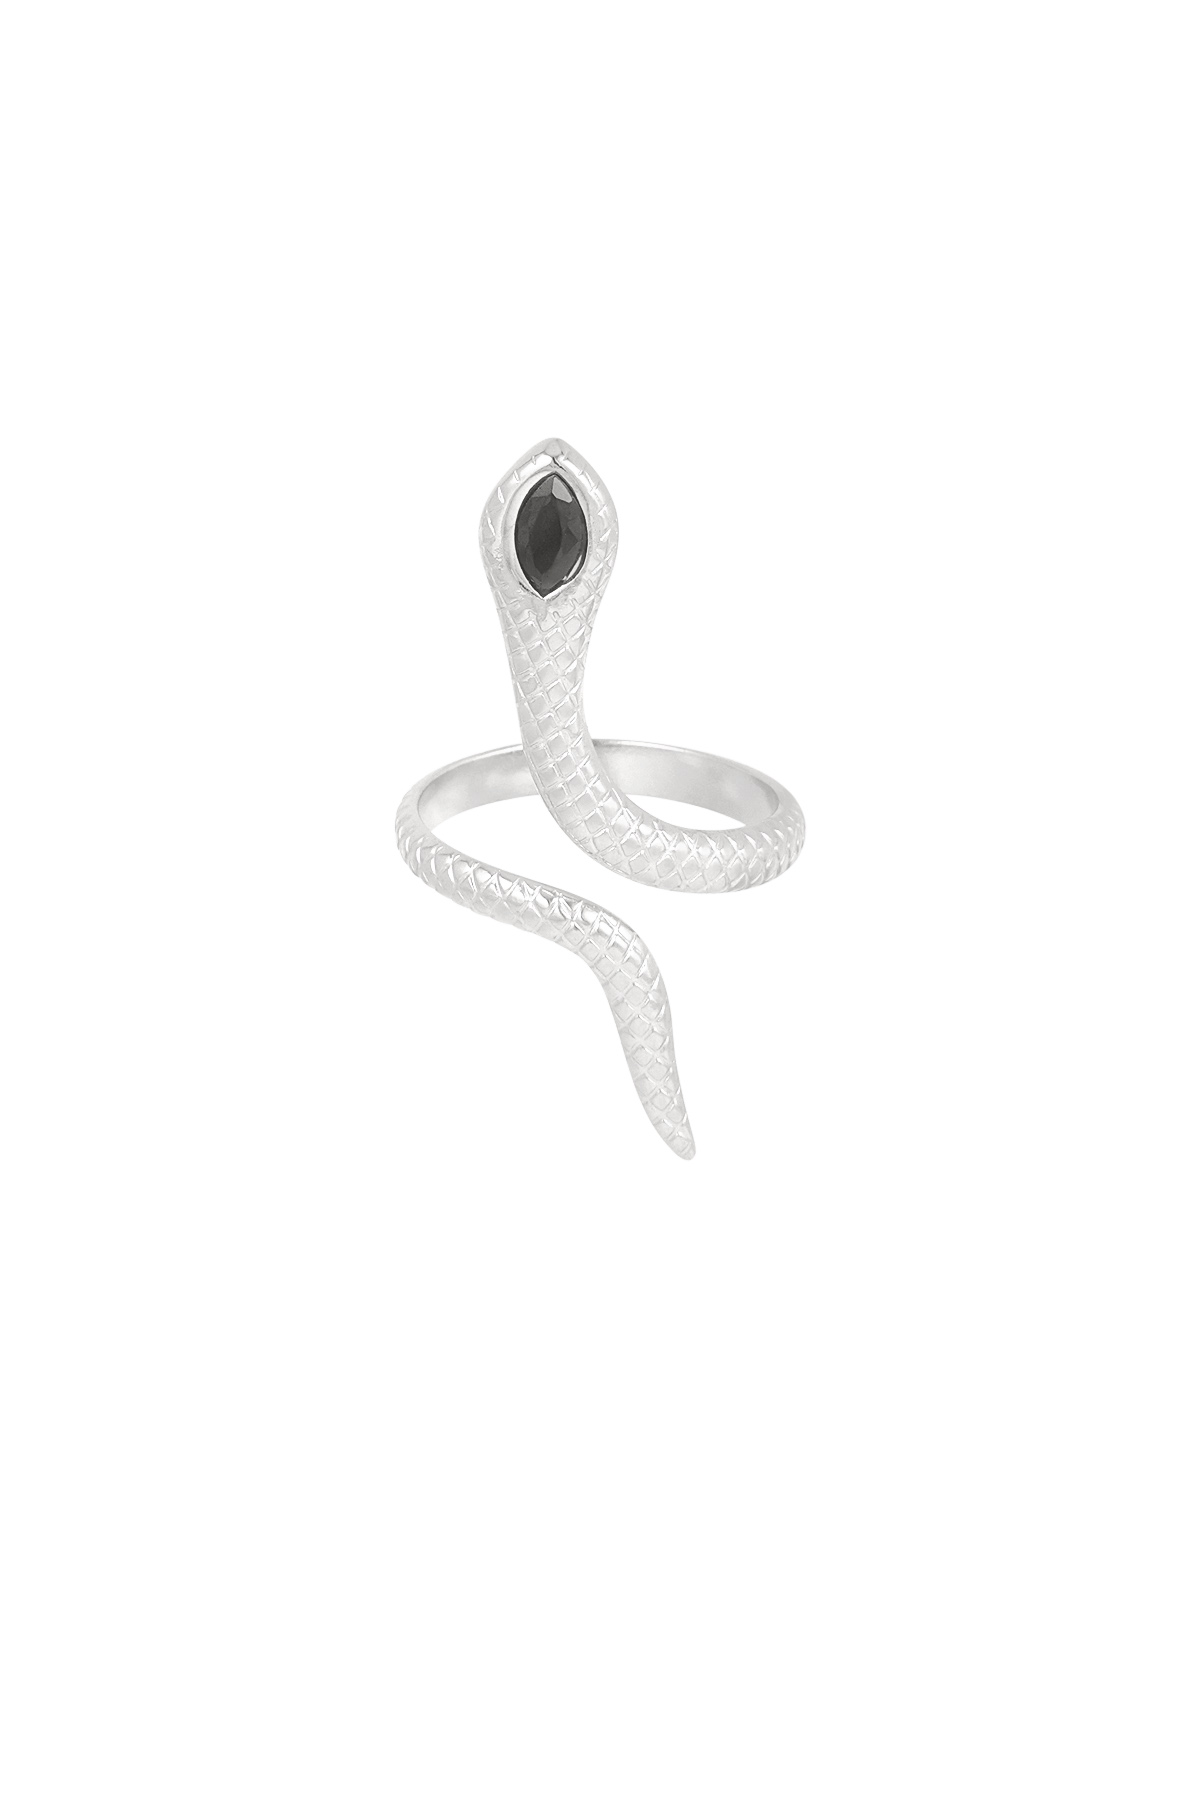 Kara yılan yüzüğü - gümüş  h5 